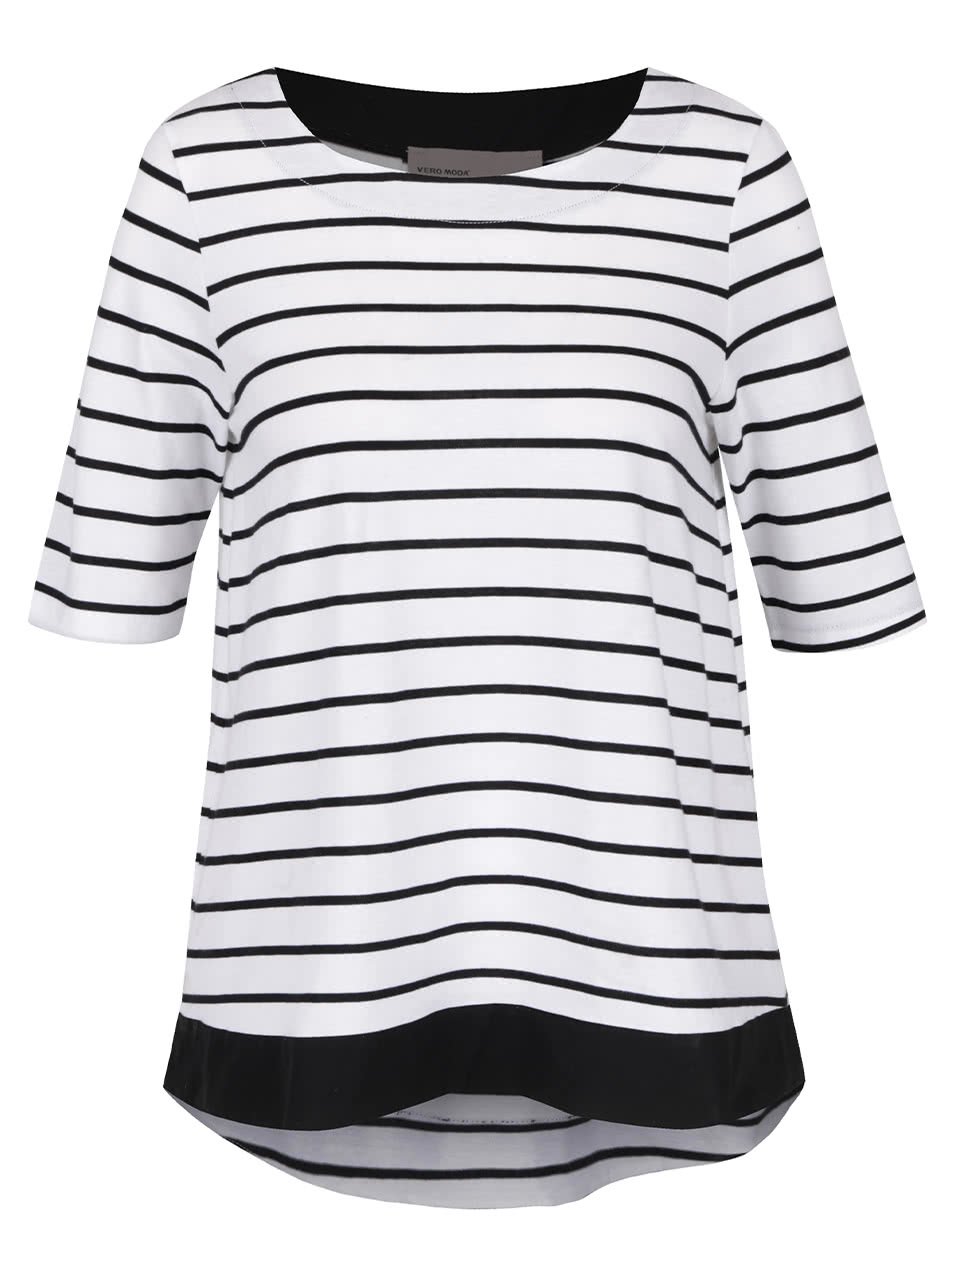 Černo-bílé pruhované tričko s 3/4 rukávy Vero Moda Sui